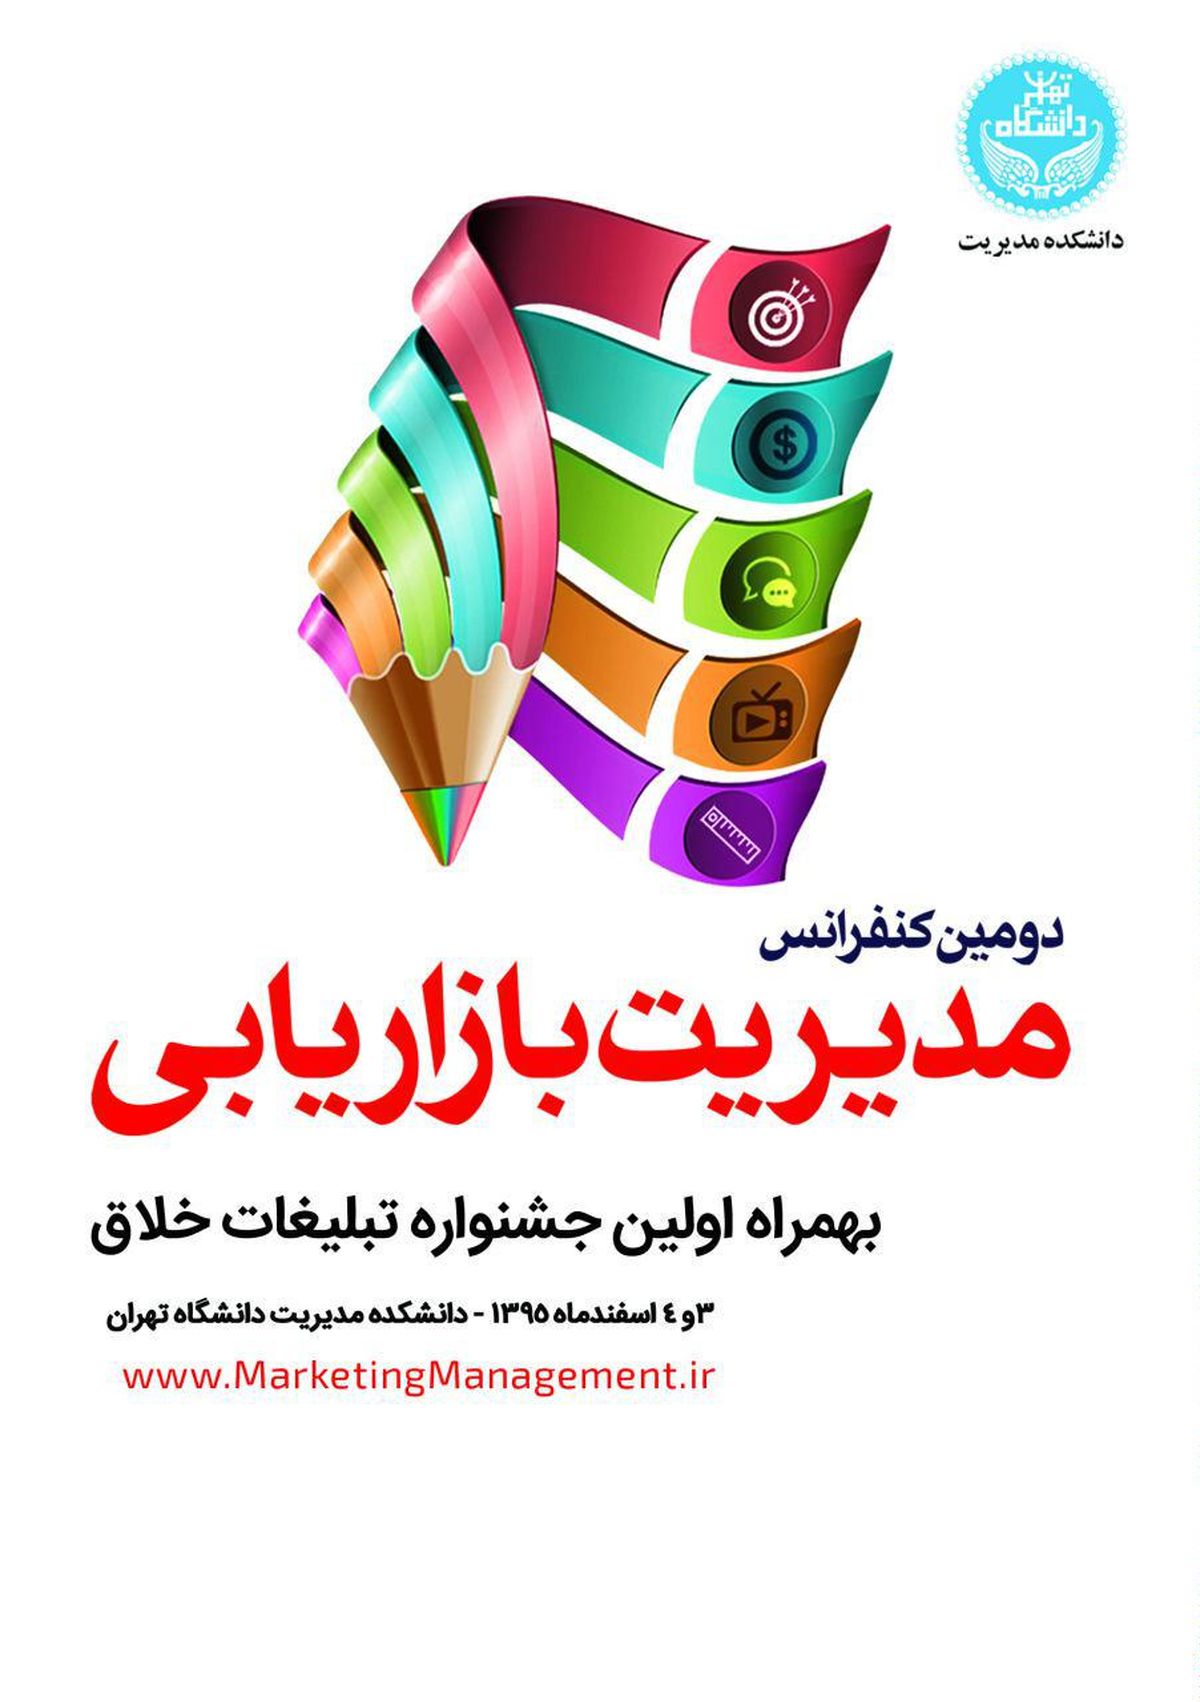 معرفی تبلیغات خلاق در دانشکده مدیریت دانشگاه تهران